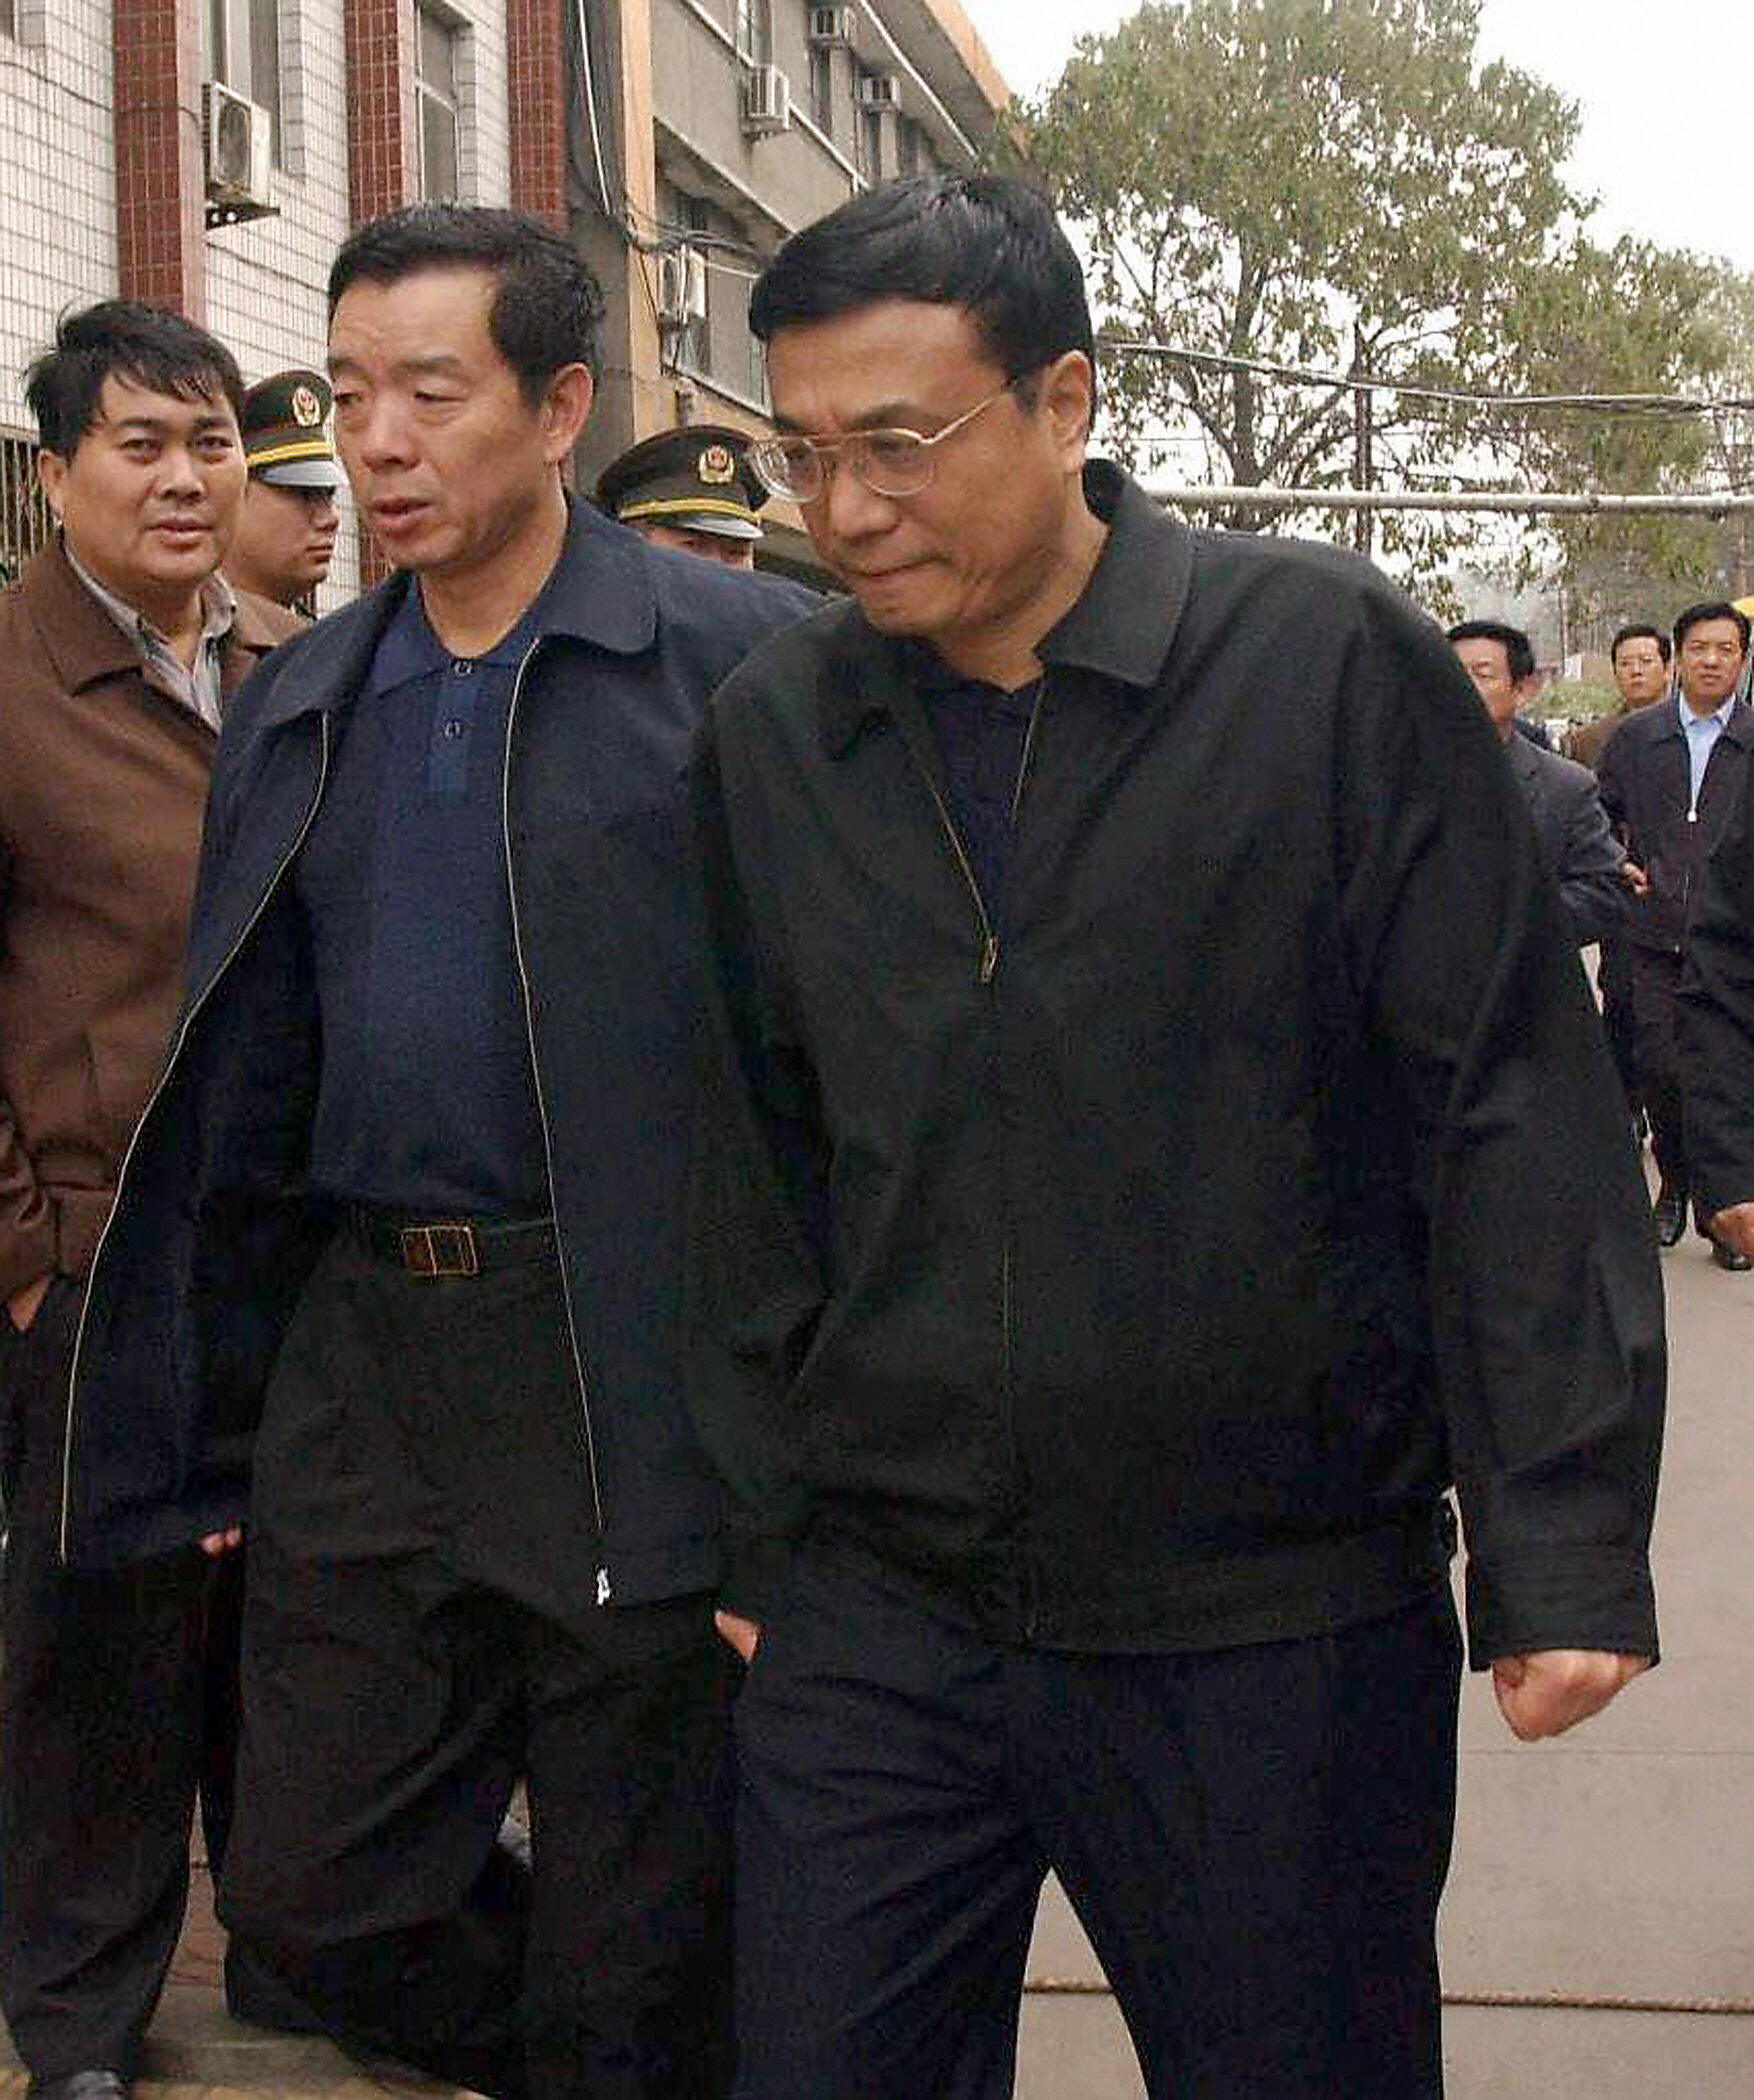 Ảnh chụp ông Lý Khắc Cường hồi còn là Bí thư Tỉnh ủy Hà Nam tại một mỏ than địa phương vào năm 2004. (Ảnh: STR/AFP/Getty Images)